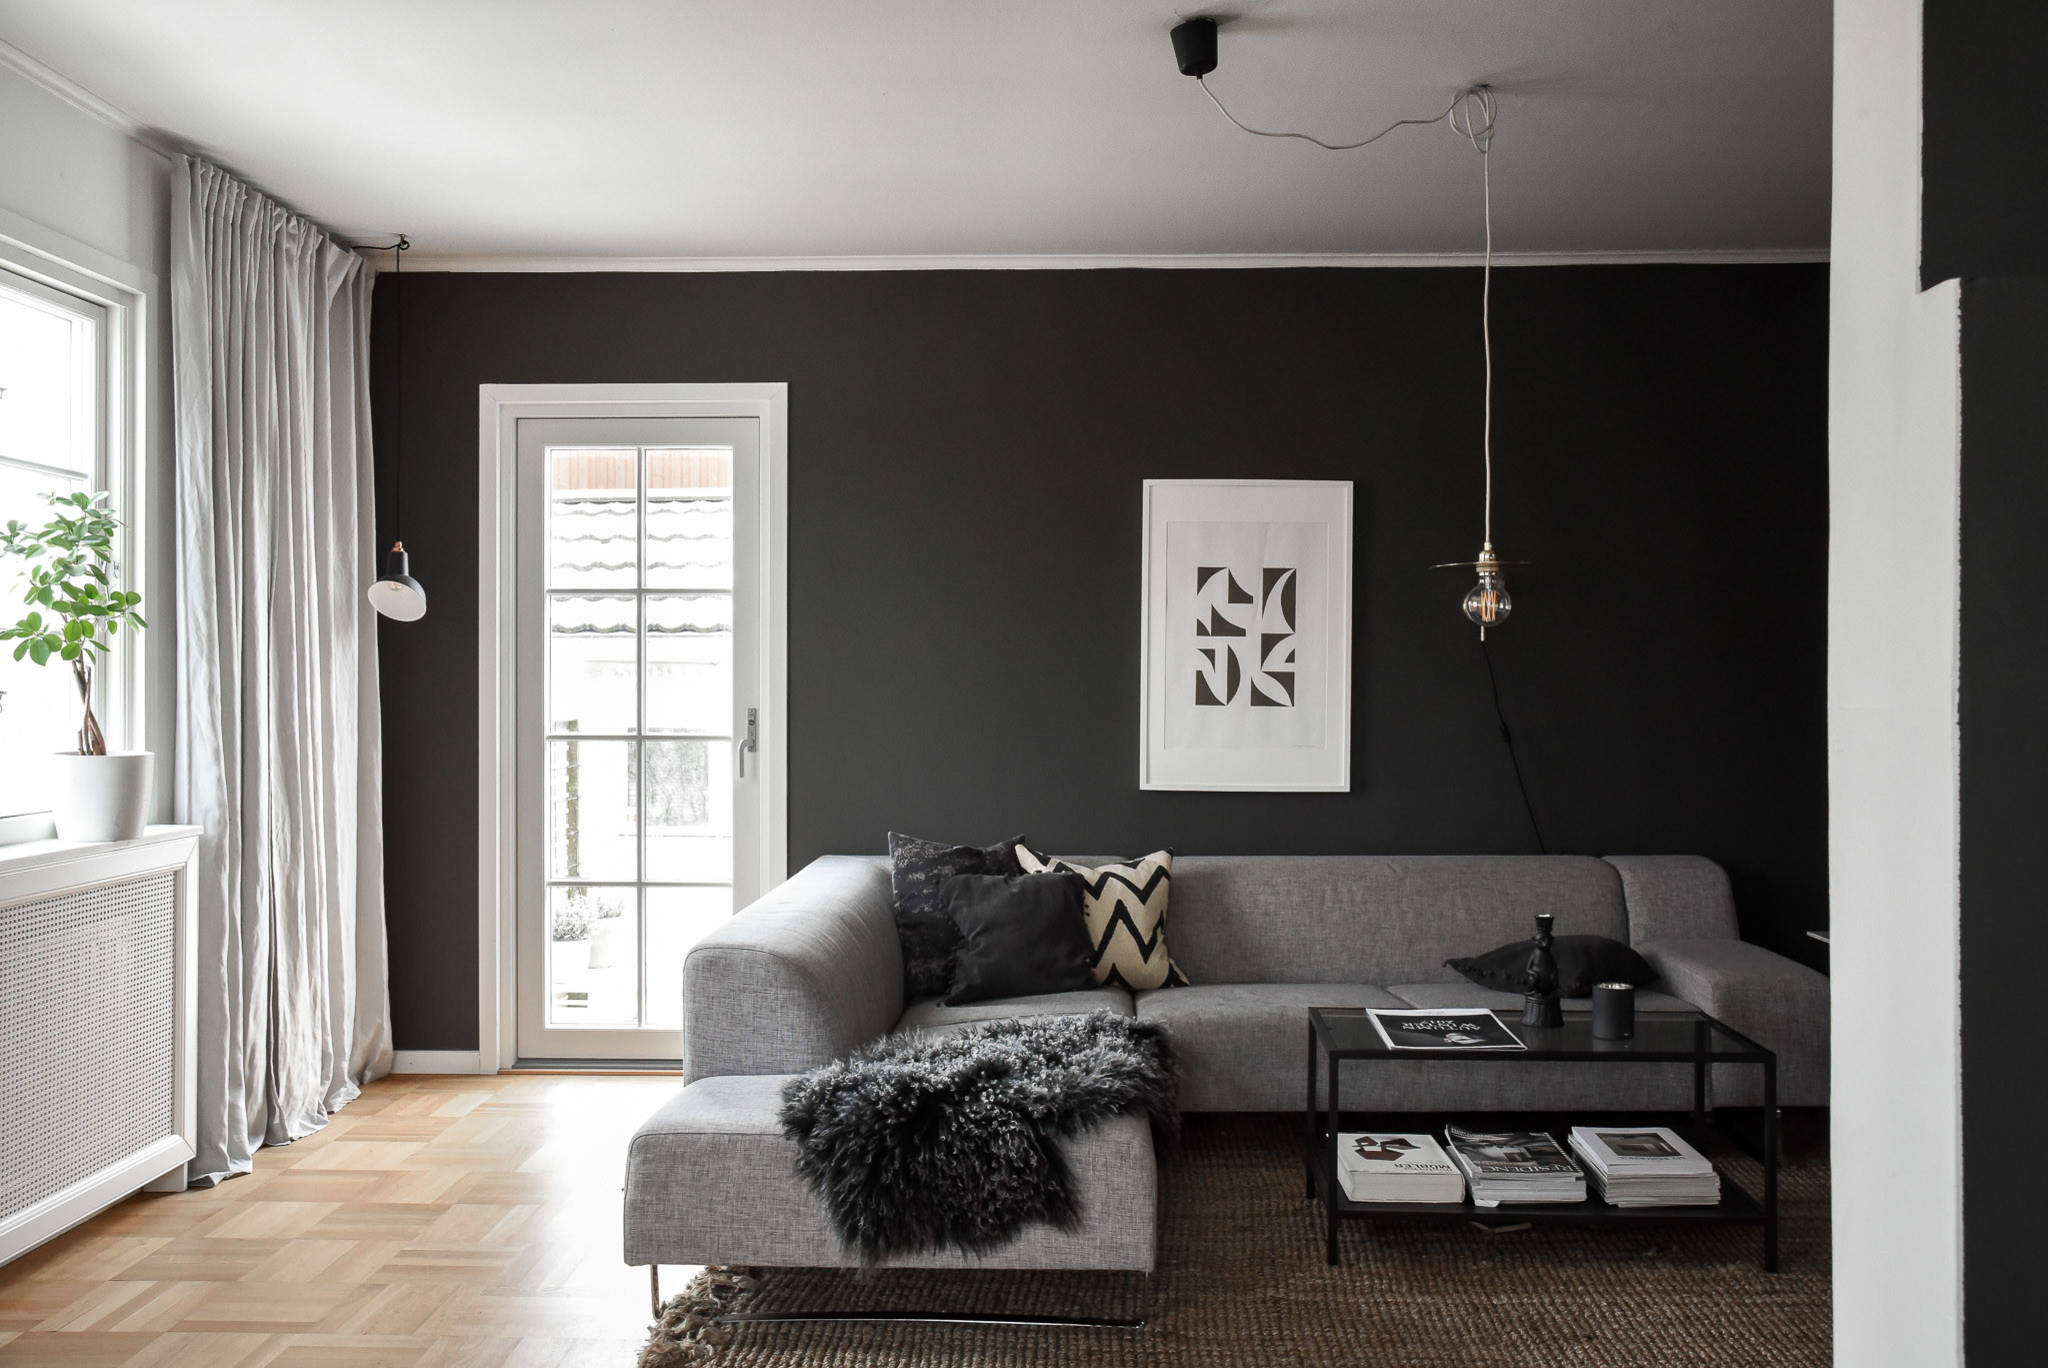 Практичный и удобный интерьер квартиры - советы профессиональных дизайнеров